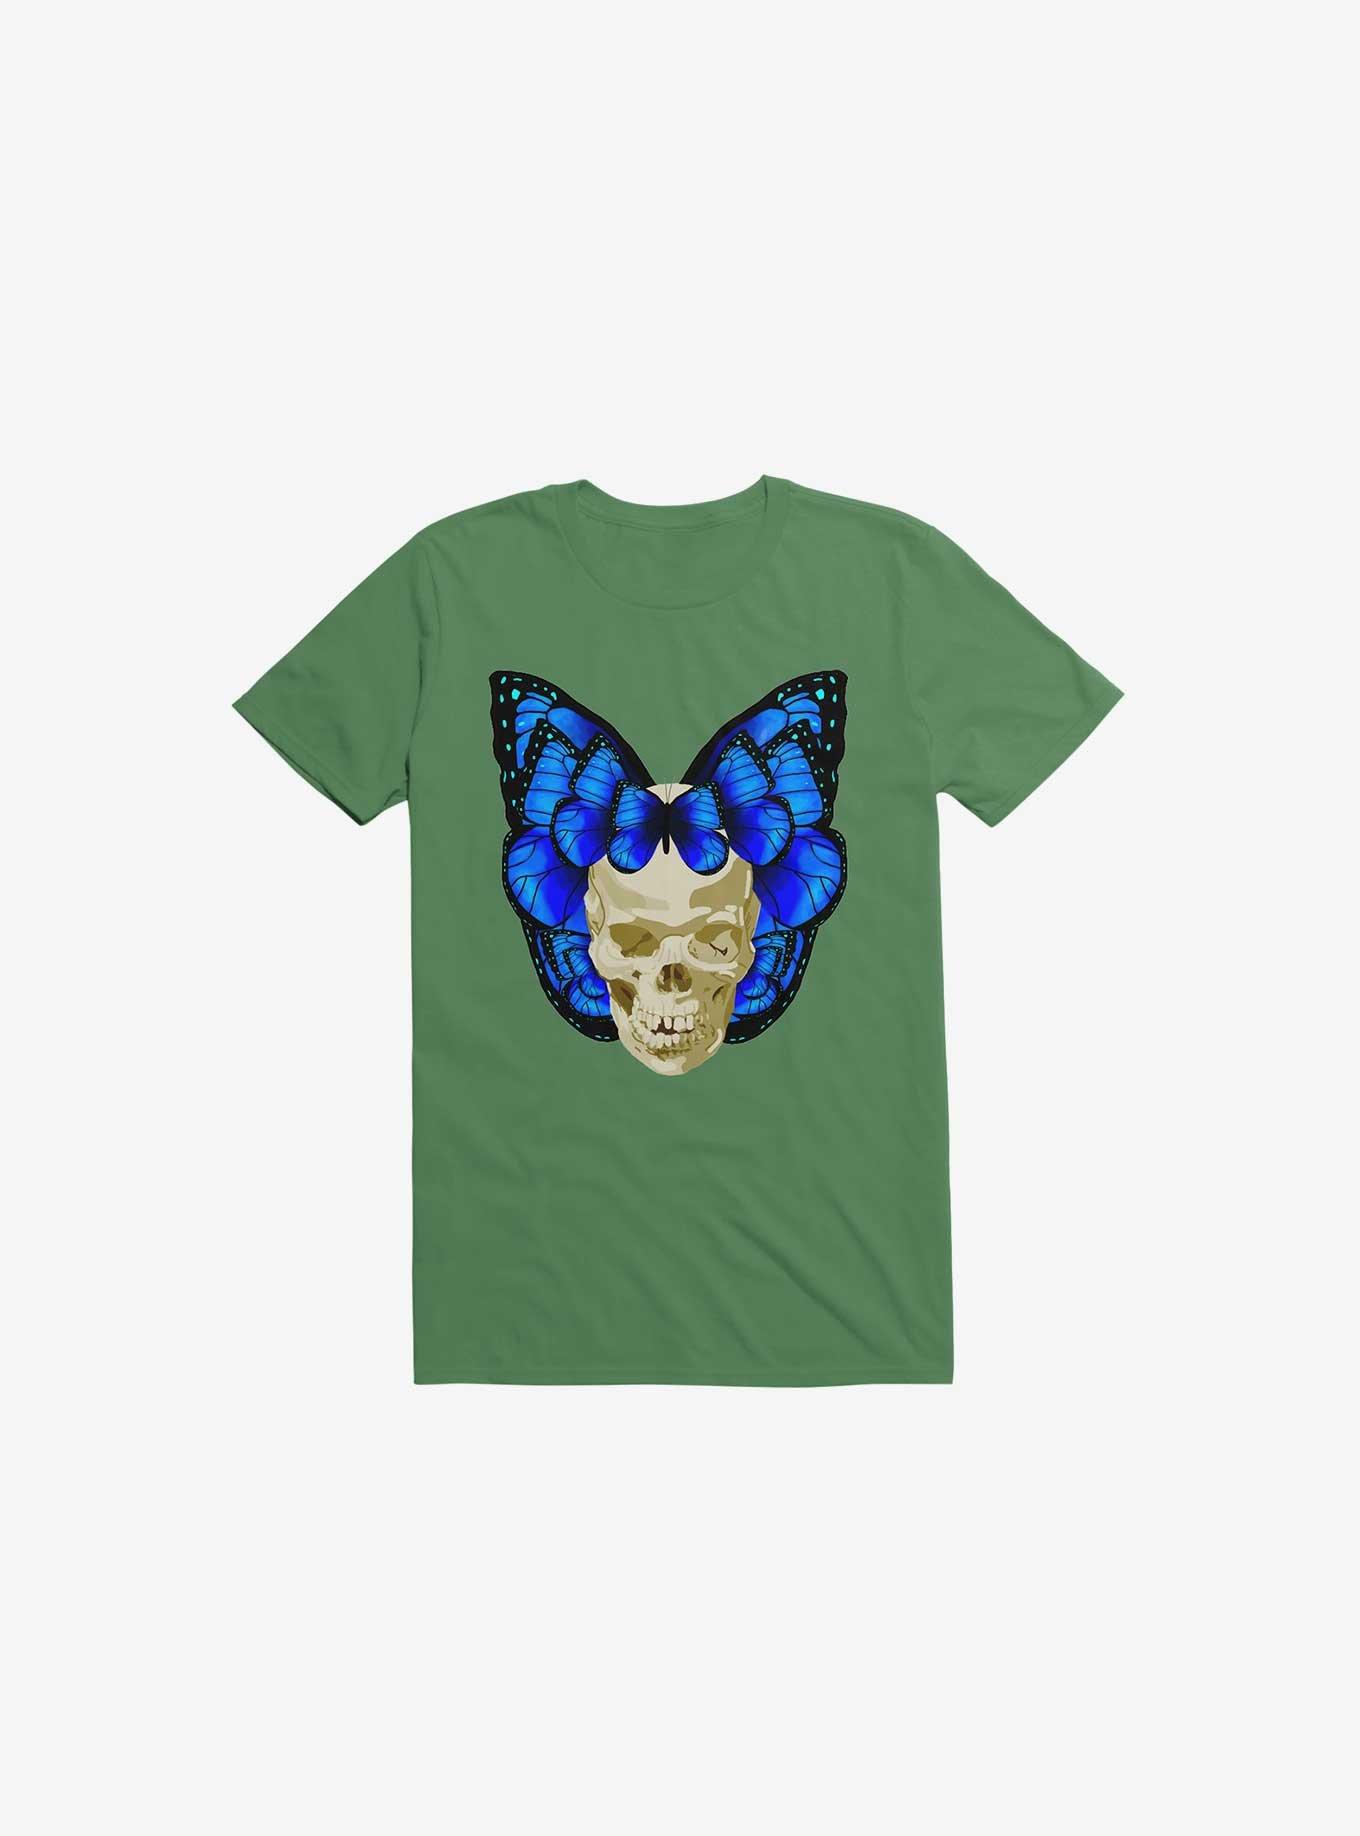 Wings Of Death Butterfly Skull Kelly Green T-Shirt